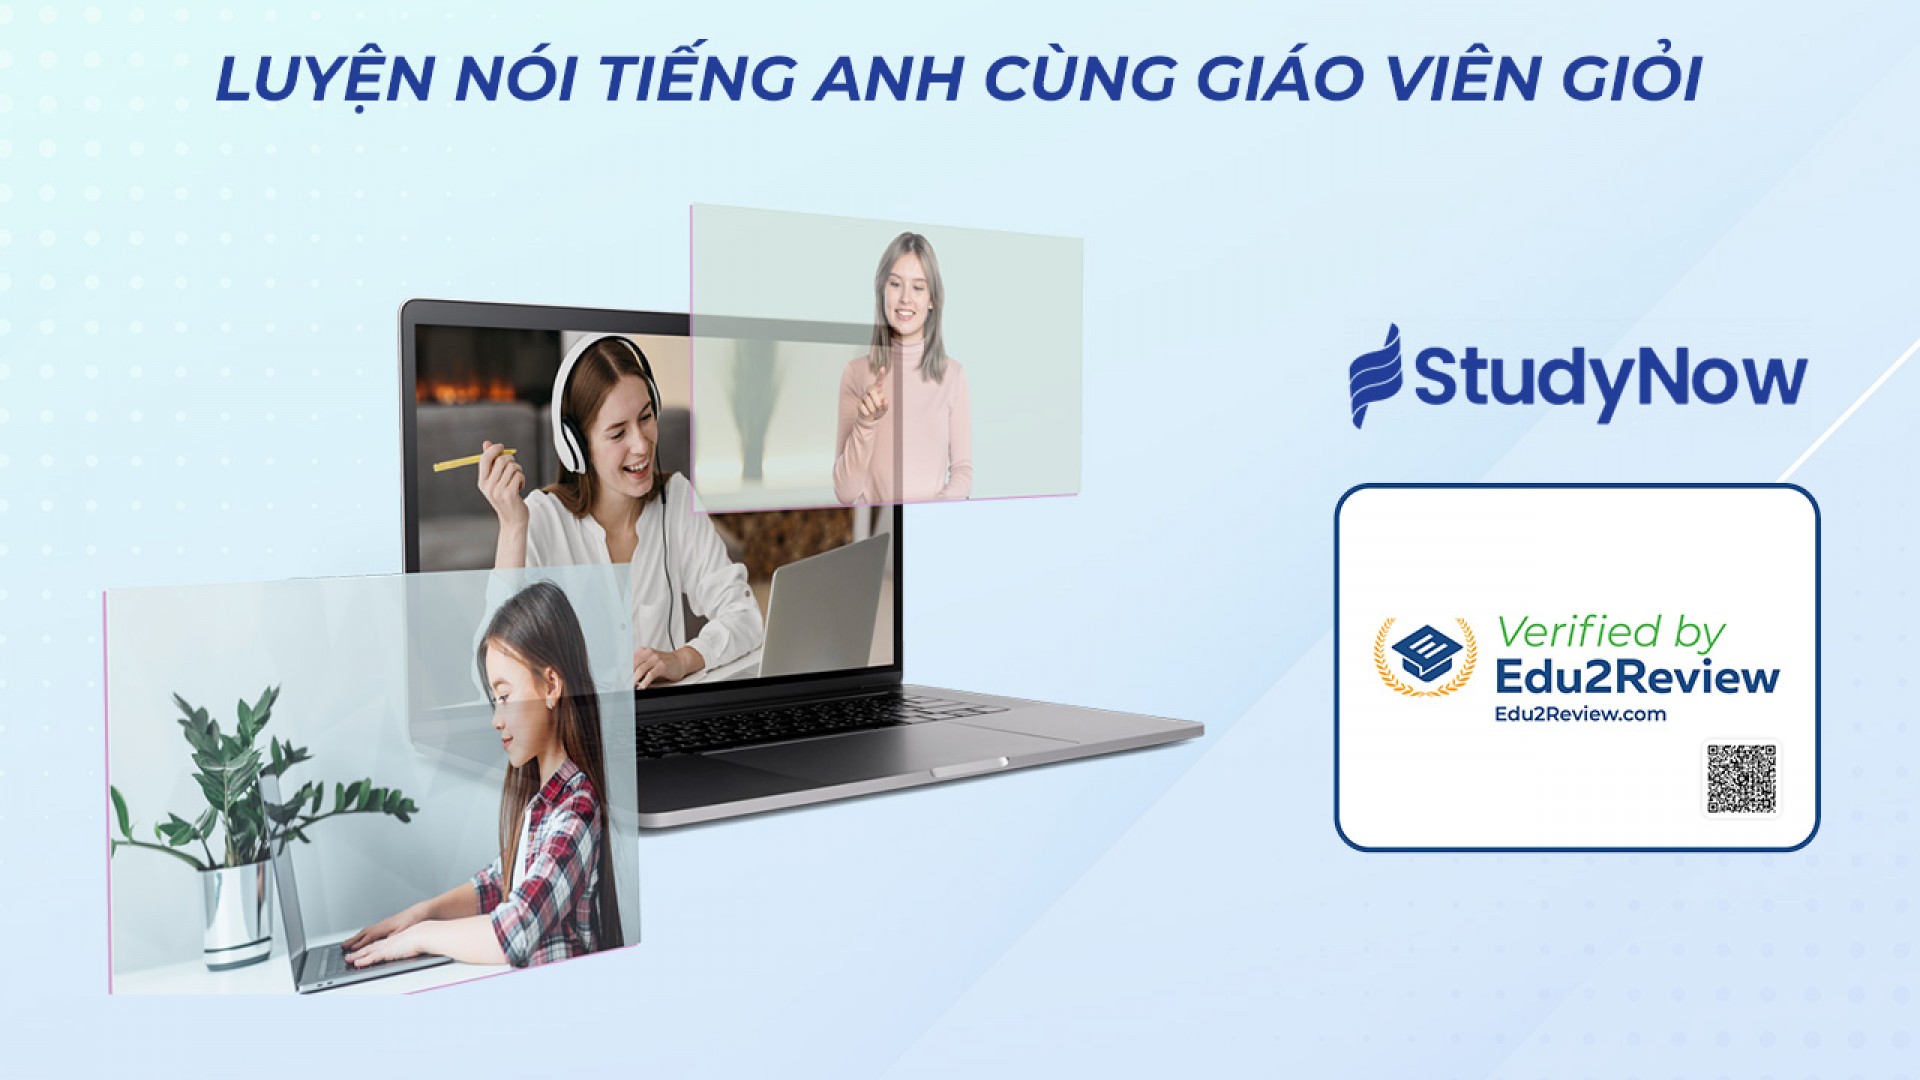 StudyNow - Đơn vị đào tạo tiếng Anh online vinh dự nhận chứng chỉ “Verified by Edu2Review"